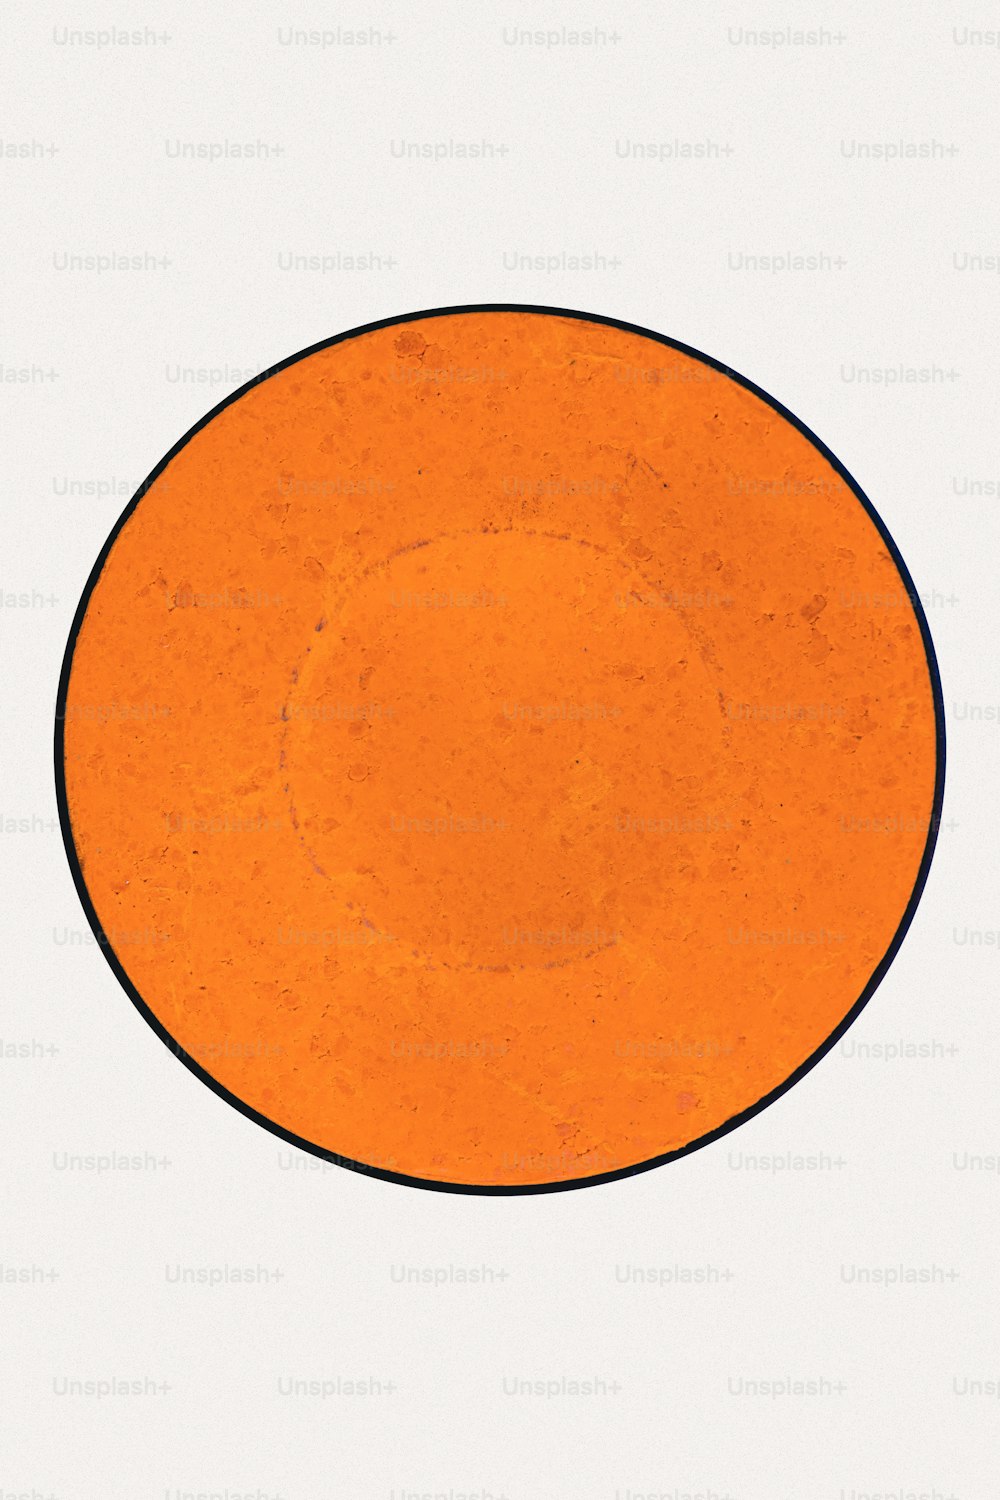 un piatto arancione con un bordo nero su sfondo bianco